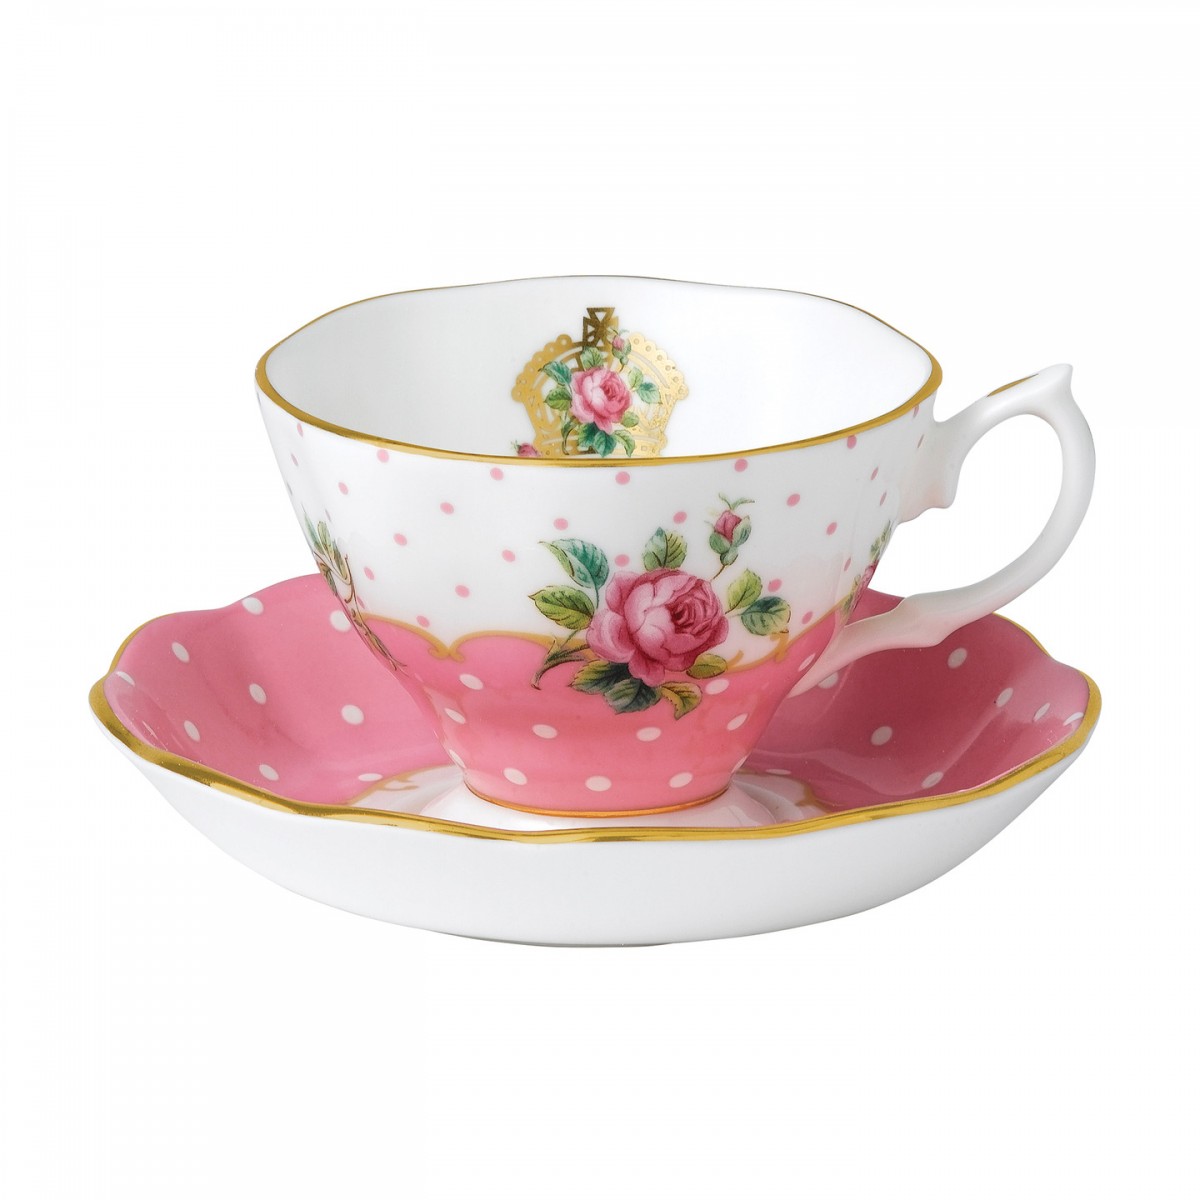 Royal Albert Cheeky Pink Vintage Teacup Saucer 652383749887 Jpg